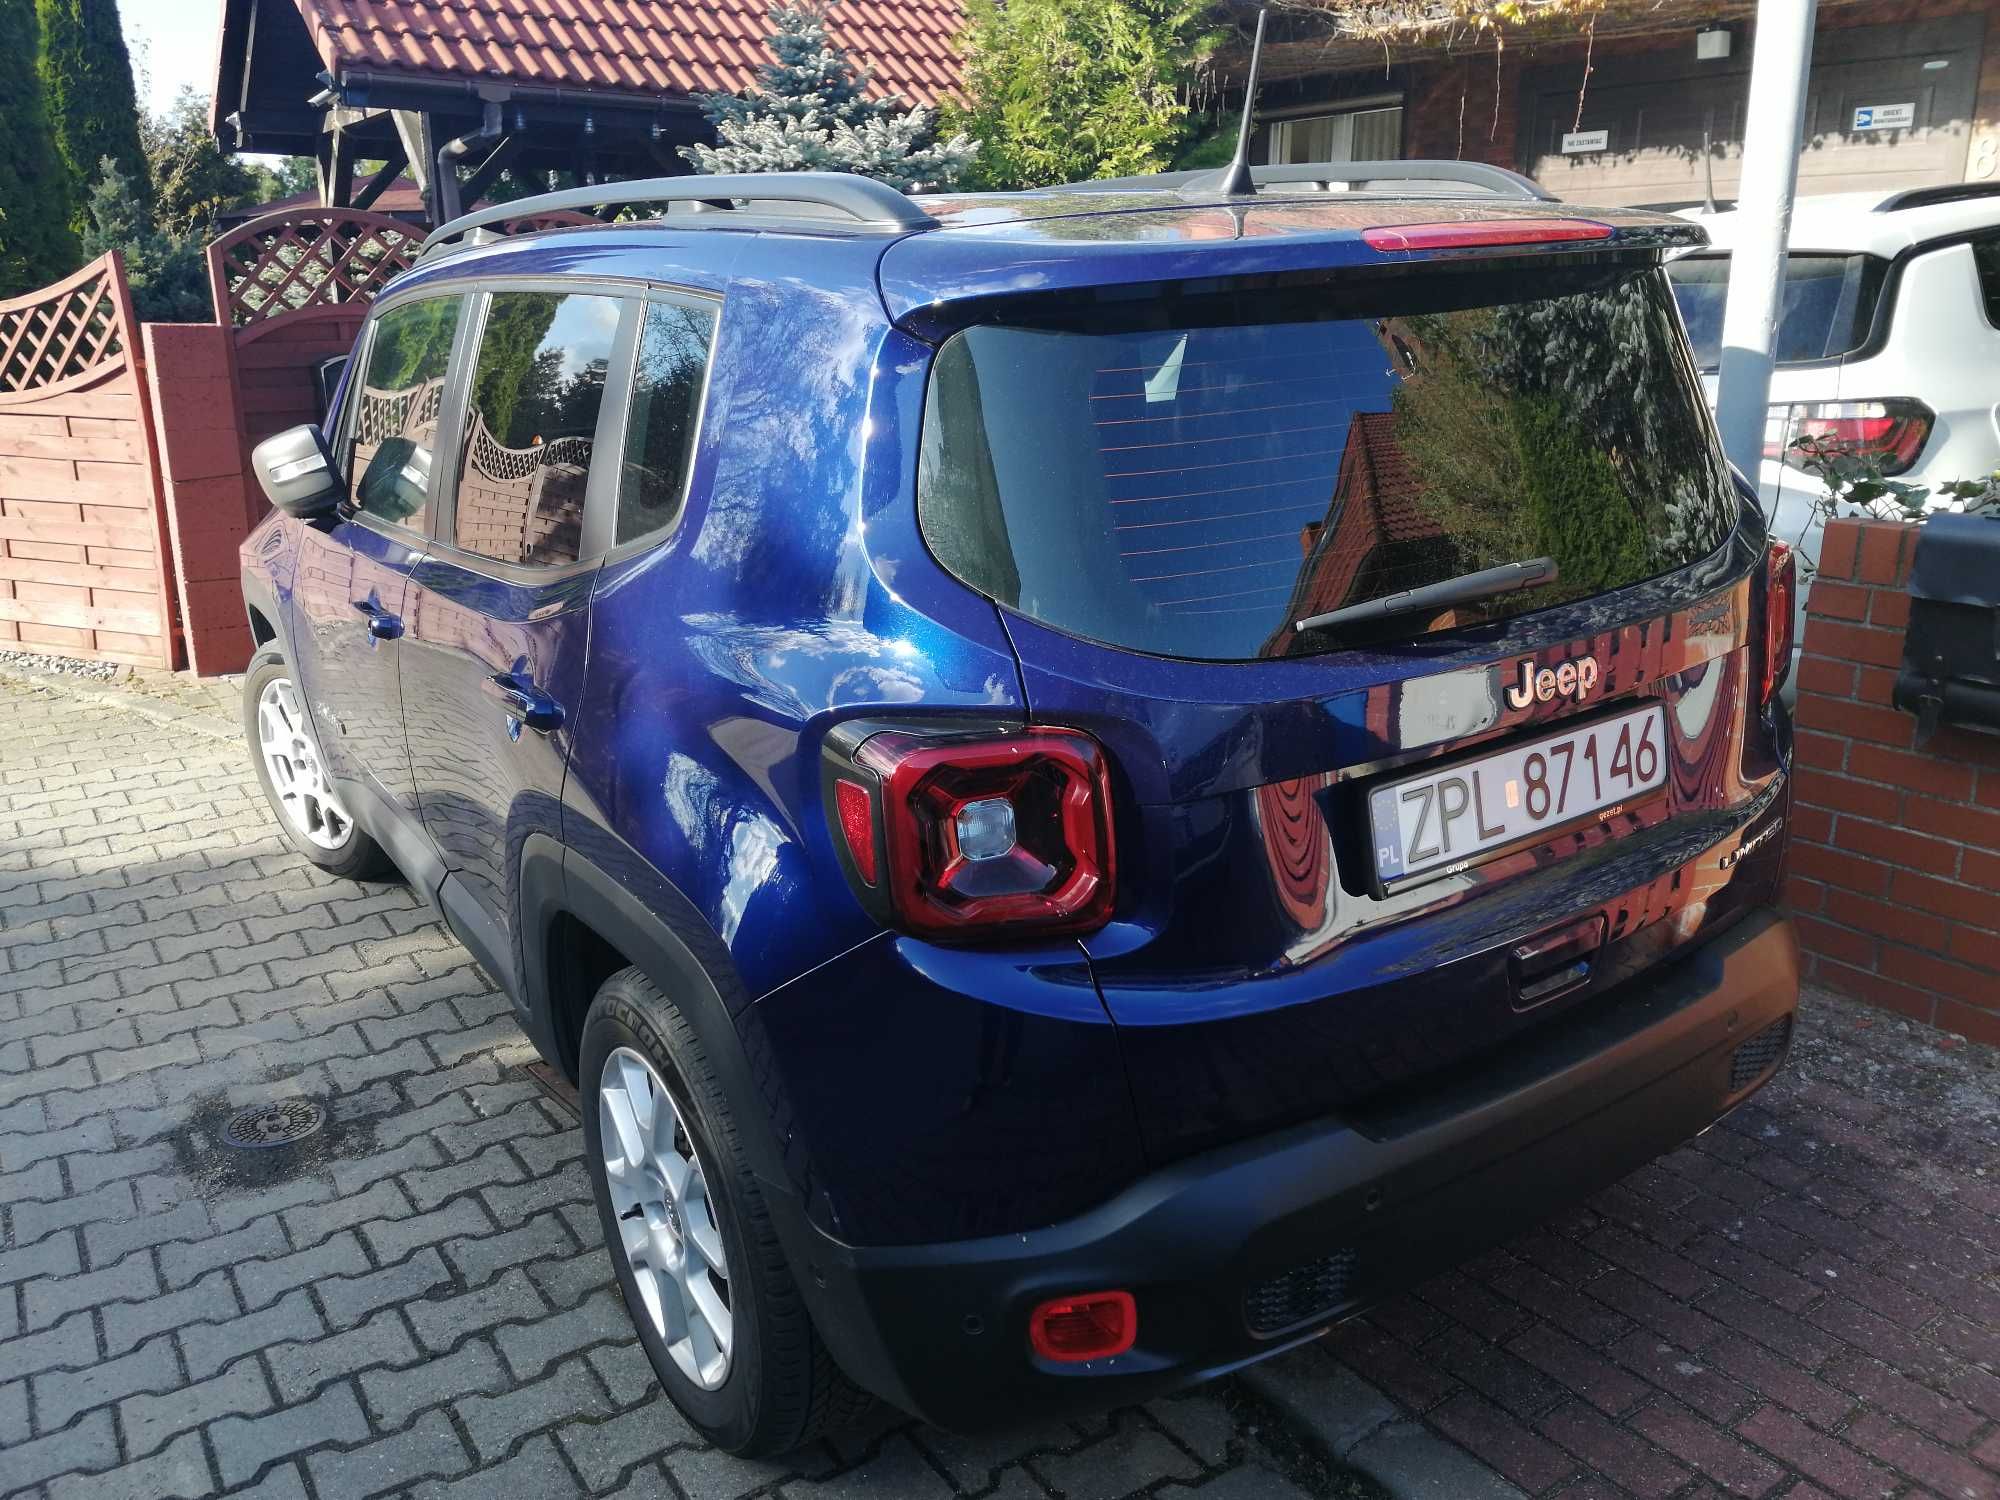 Jeep Renegade Ltd 2018 1.0, 120Km PL I właś, bezwyp, garaż, 110 tys km